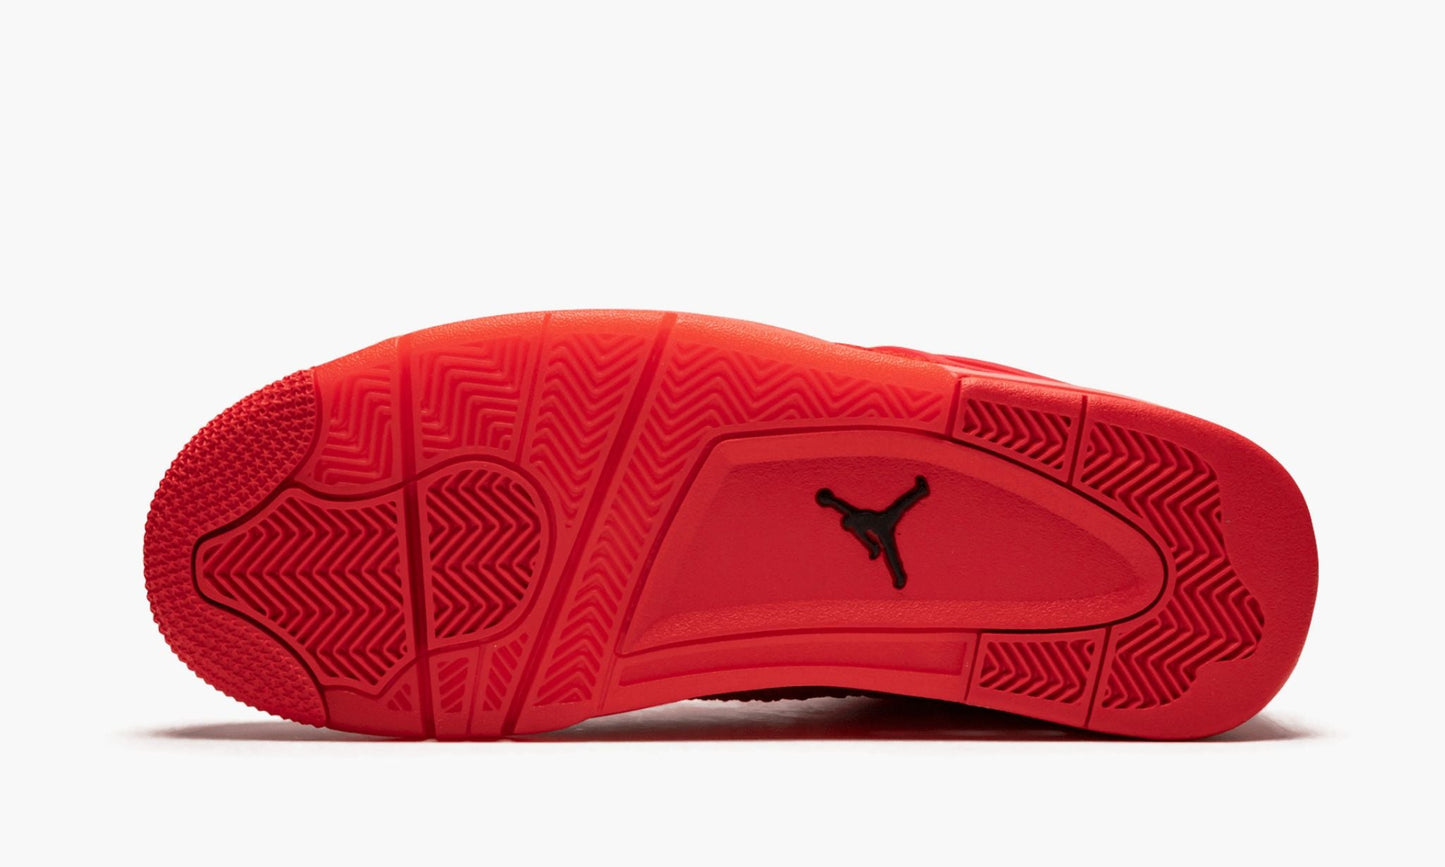 Air Jordan 4 Retro FK "Red"